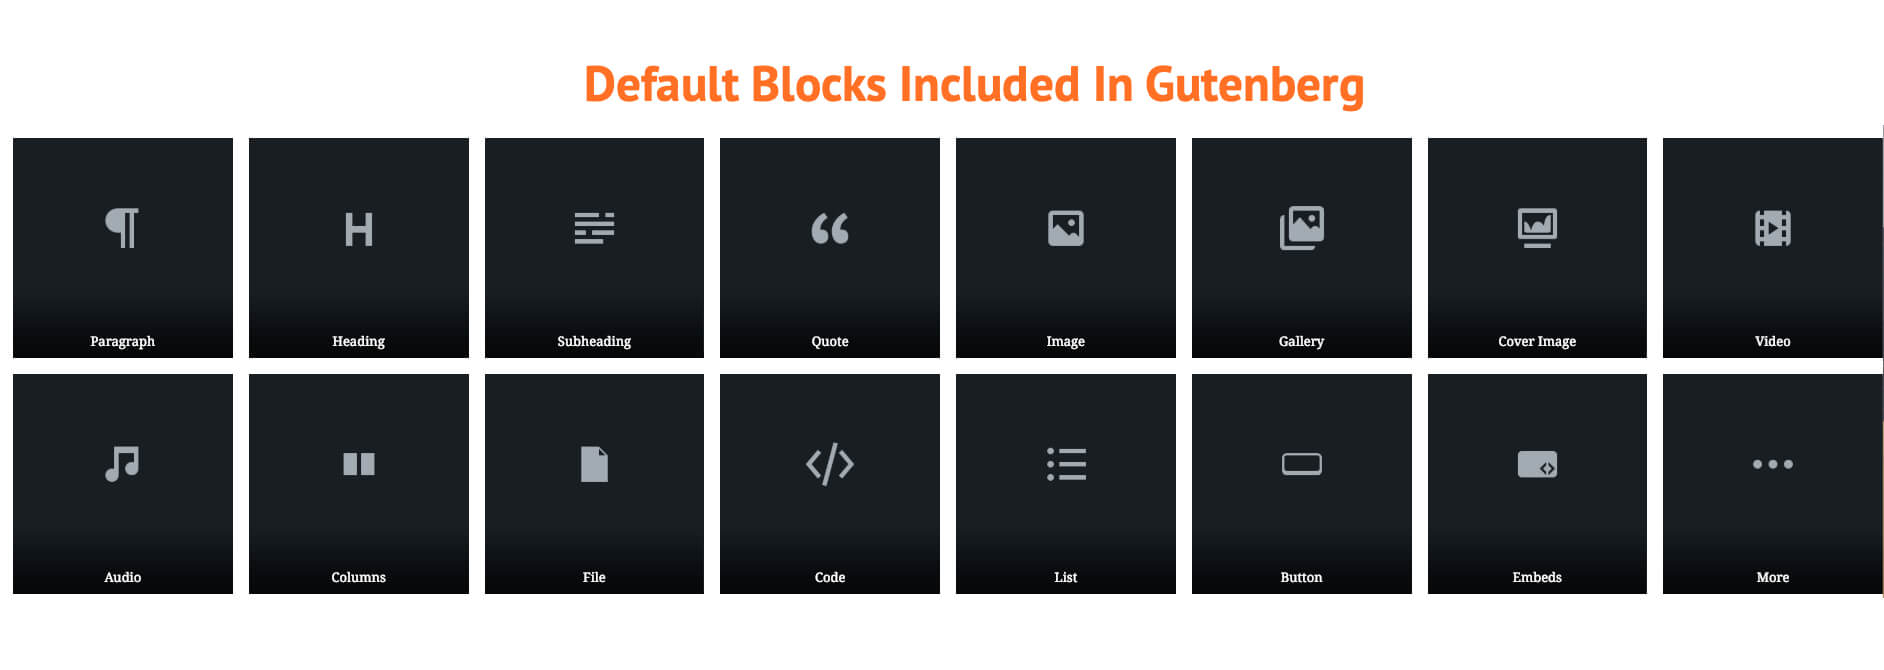 Default-blocks-in-Gutenberg1280a.jpg